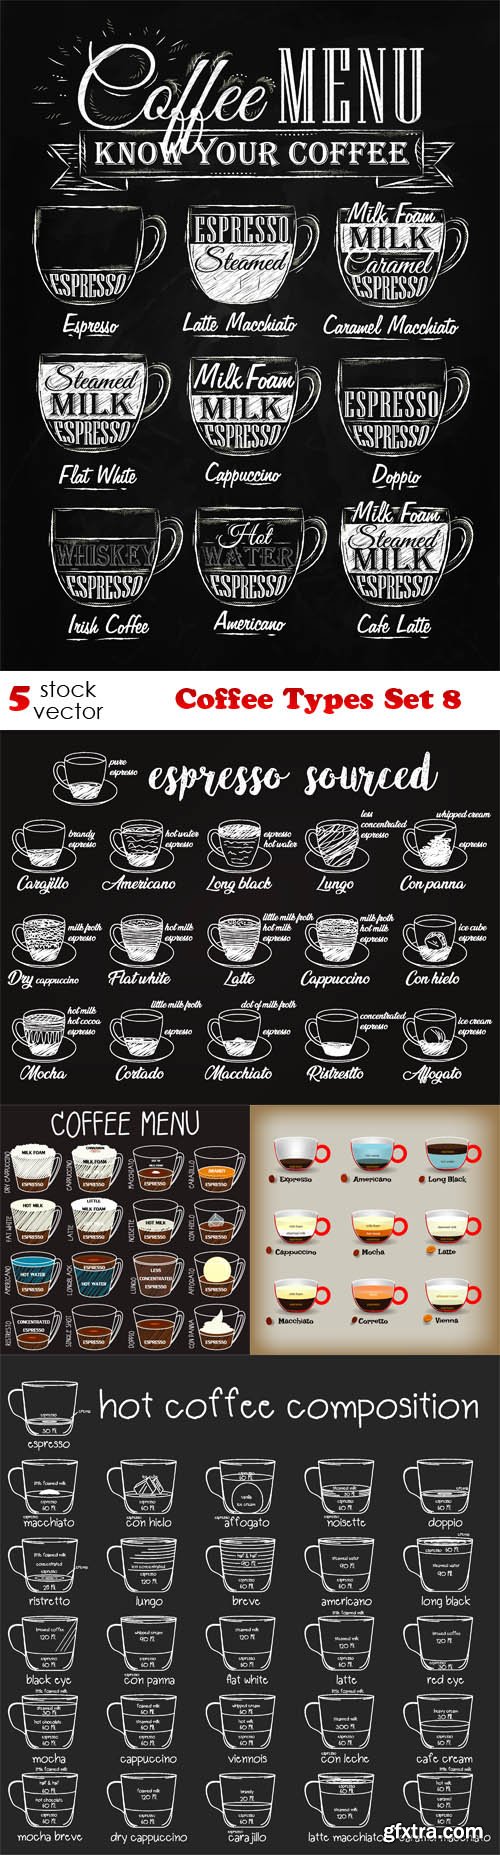 Vectors - Coffee Types Set 8